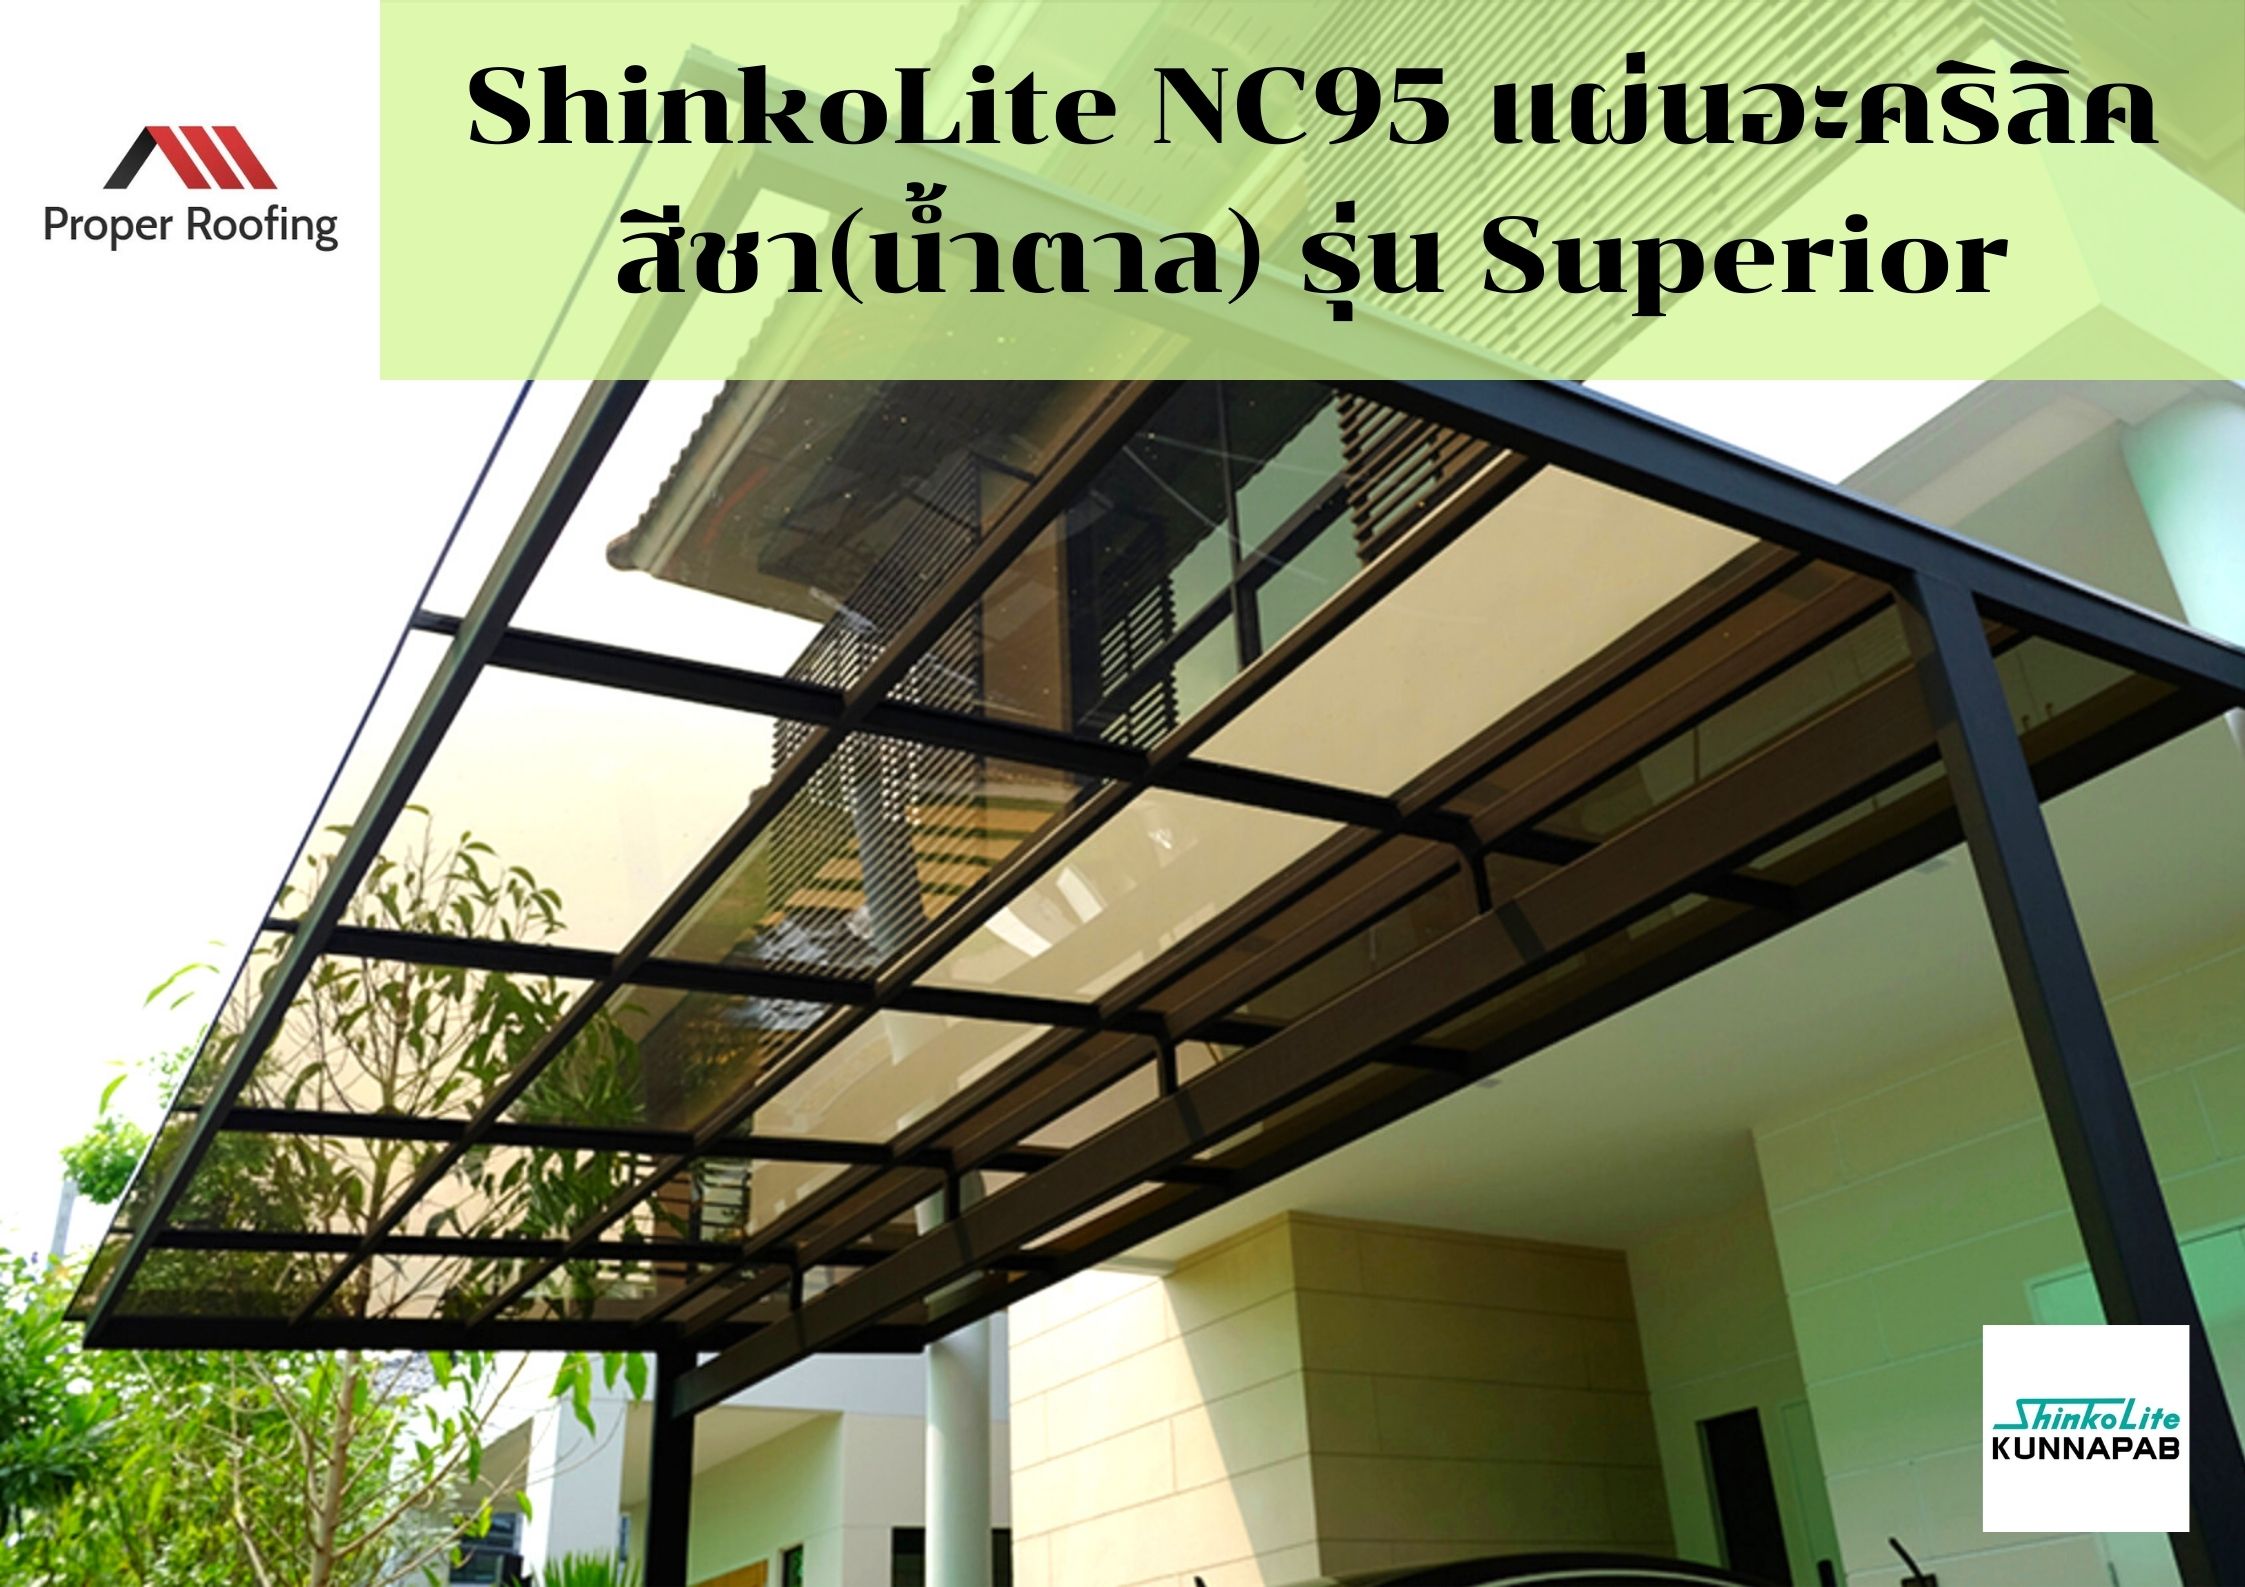 ShinkoLite NC95 Superior